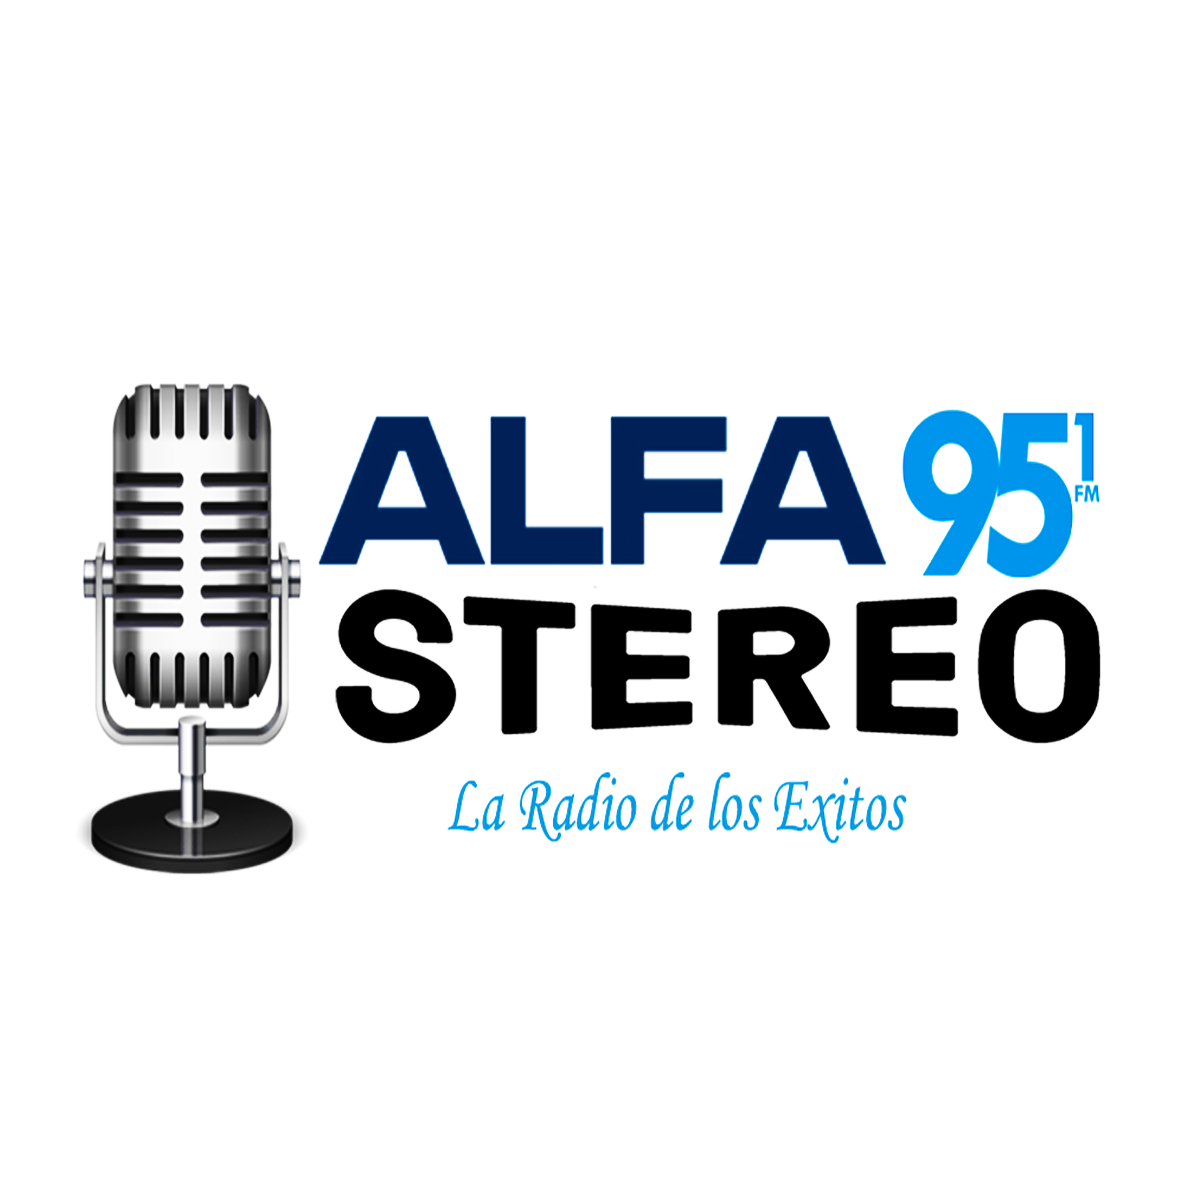 Alfa Stereo 95.1 FM